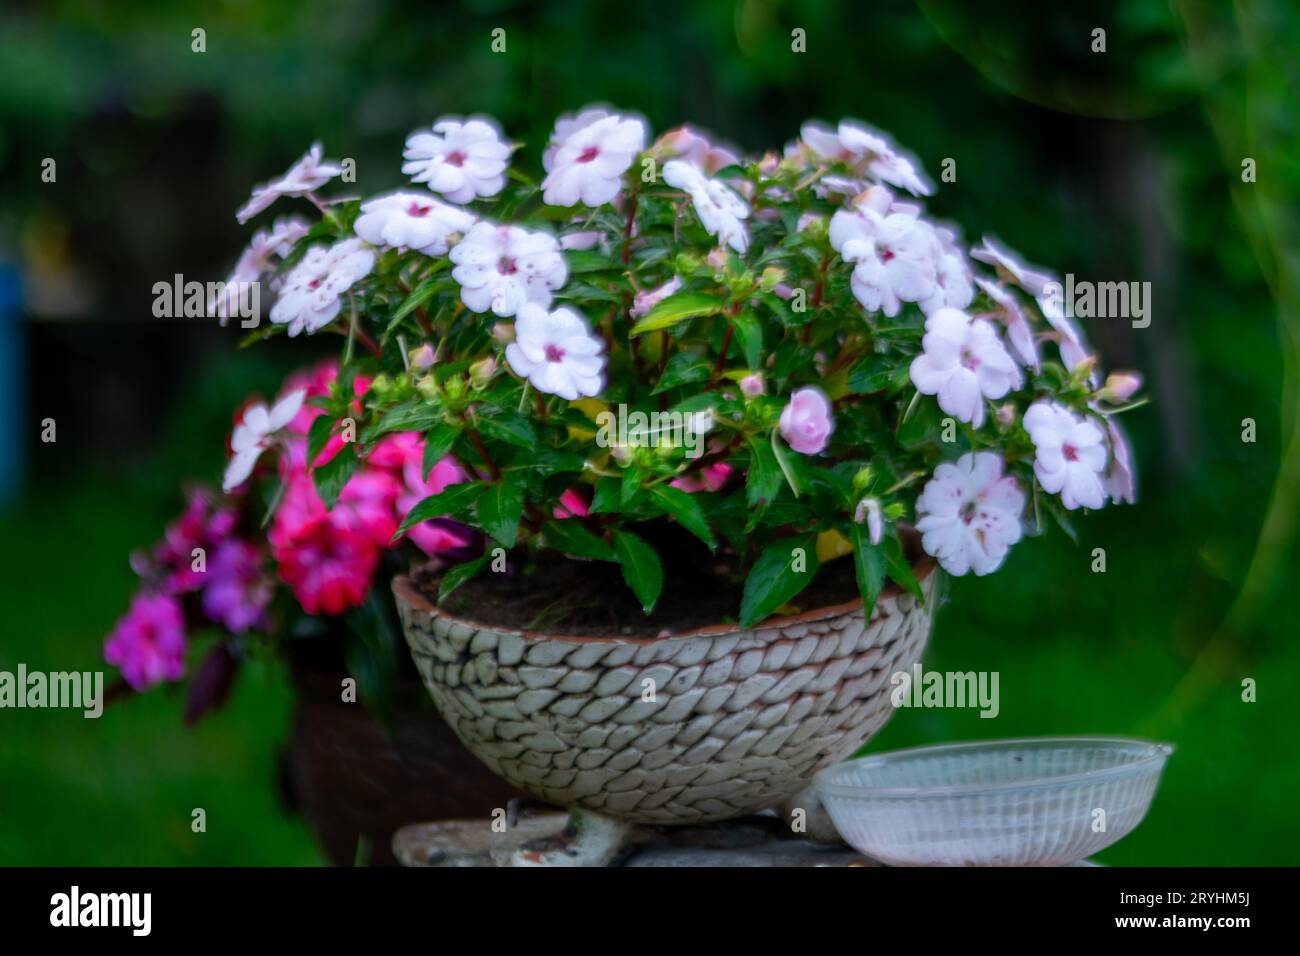 Bellissimi fiori estivi in un vaso di fiori, interno del giardino, falchi Impatiens, giardino con aiuole e piante colorate Foto Stock